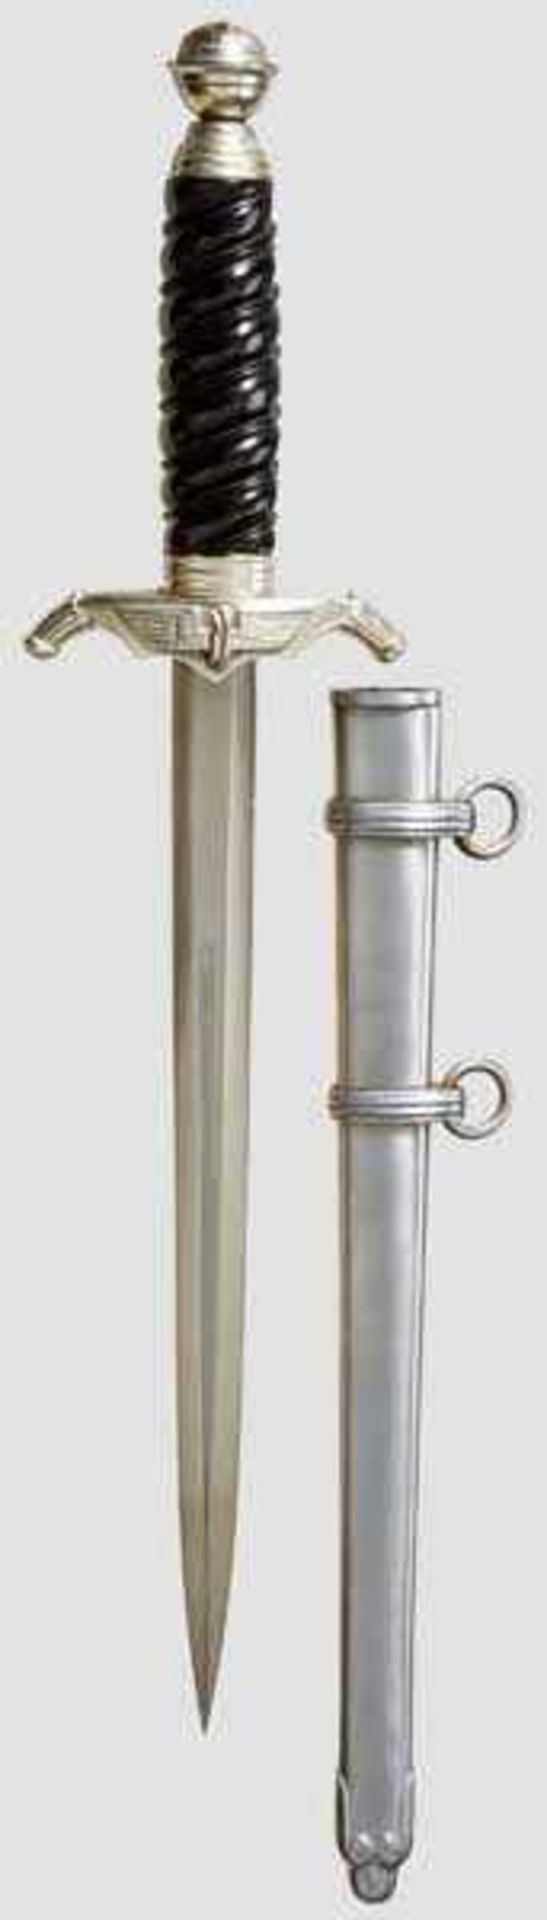 A Model 1938 Dagger for Leader of Railway Protection Maker Carl Eickhorn, Solingen, polished blade